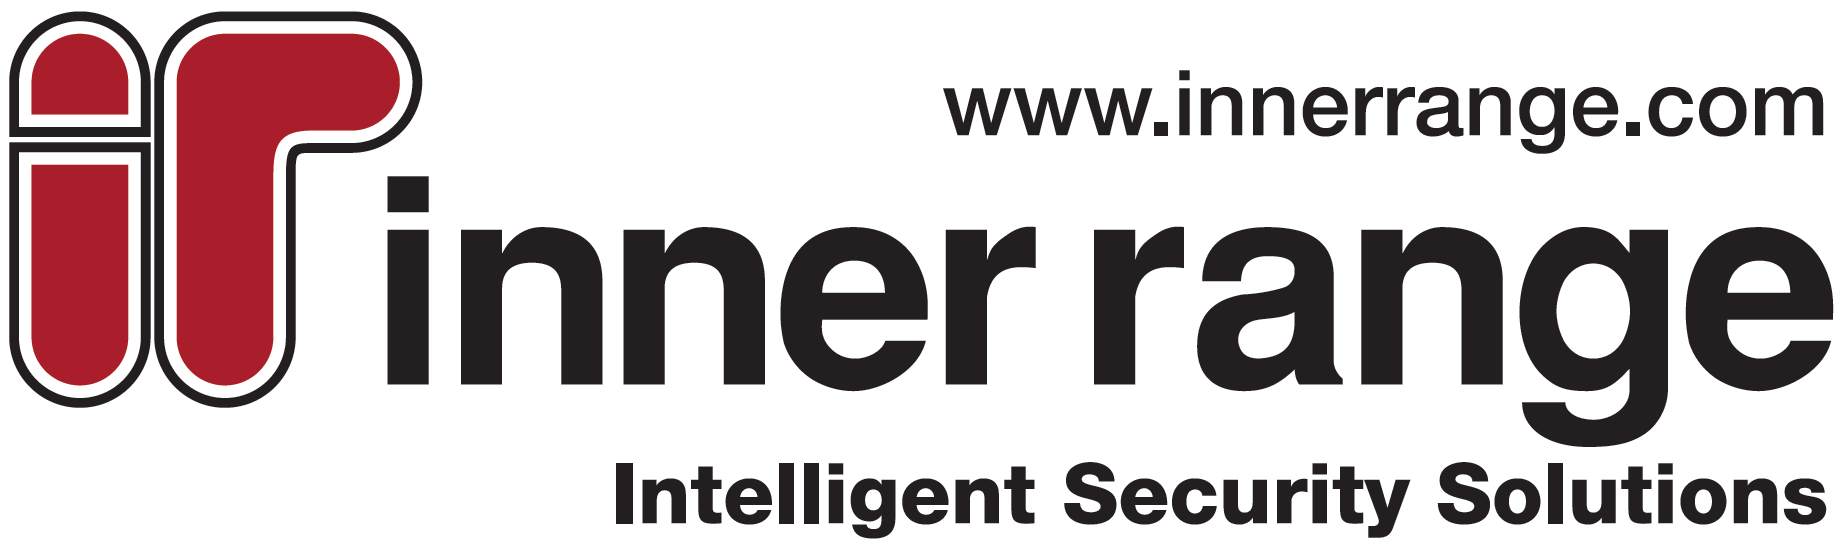 Inner Range Logo.jpg